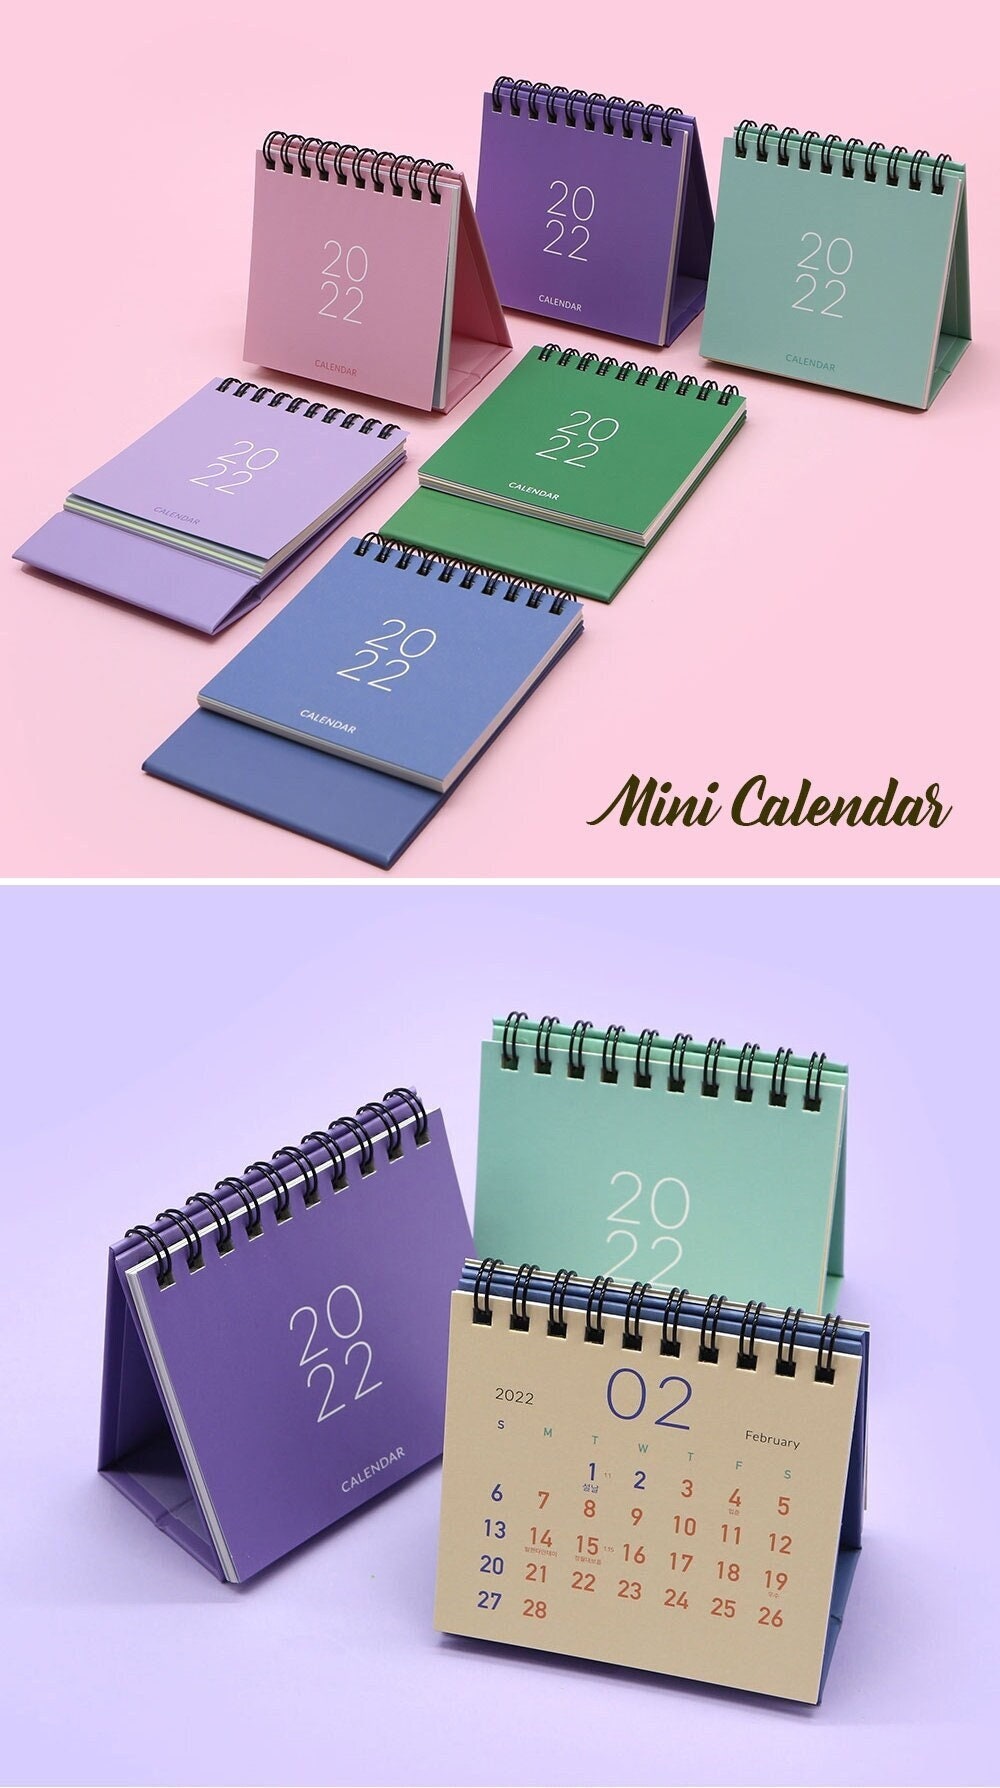 Mini calendario 2022 [5colori] / Calendario da scrivania / Calendario semplice / Calendario colorato / Calendario 2022 / Calendario 2022 / Accessori da scrivania Decor